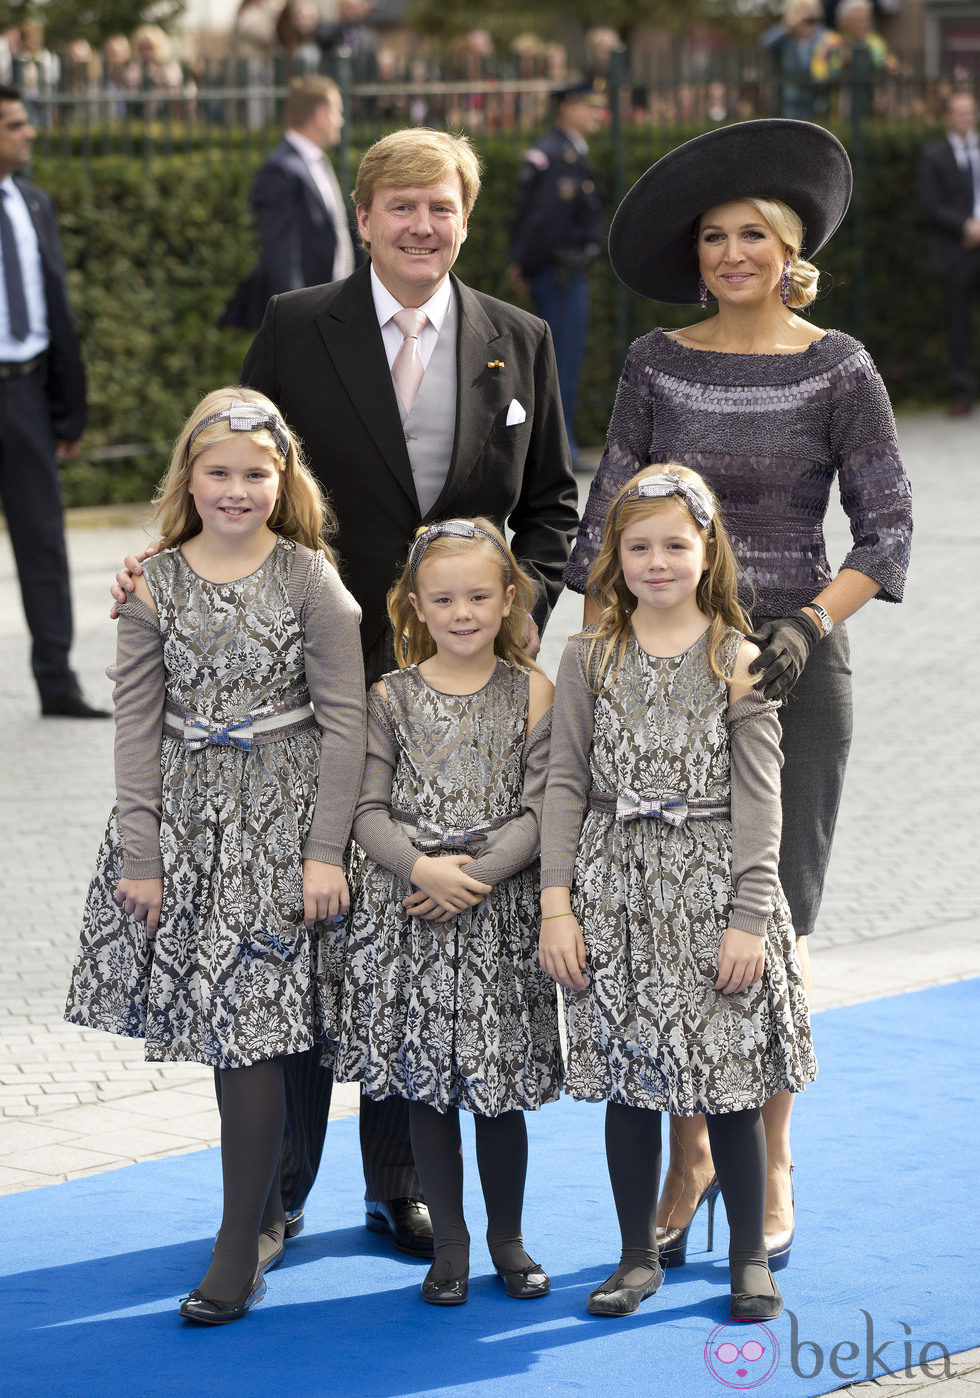 Los Reyes de Holanda y sus hijas en la boda de Jaime de Borbón-Parma y Viktória Cservenyák